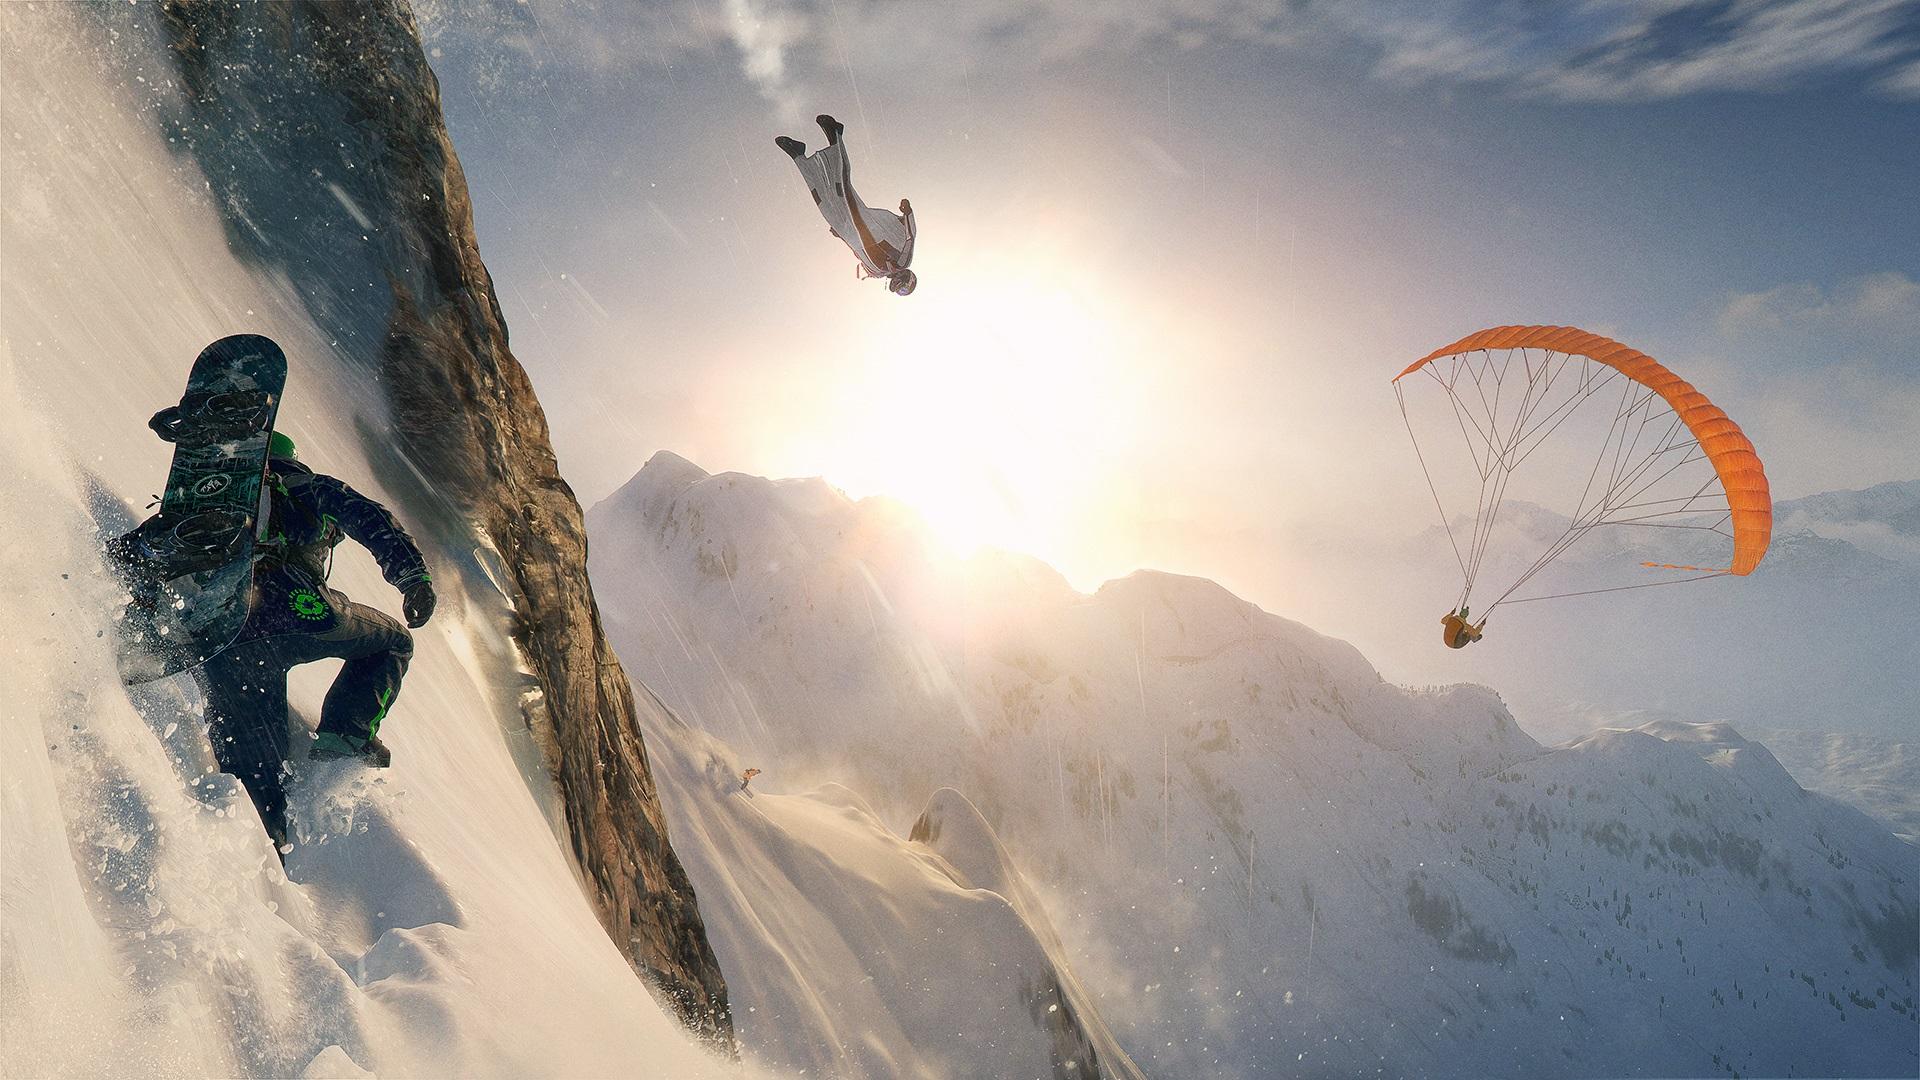 Steep Gamescom 2016 Hands On: Climbing The Highest Mountain